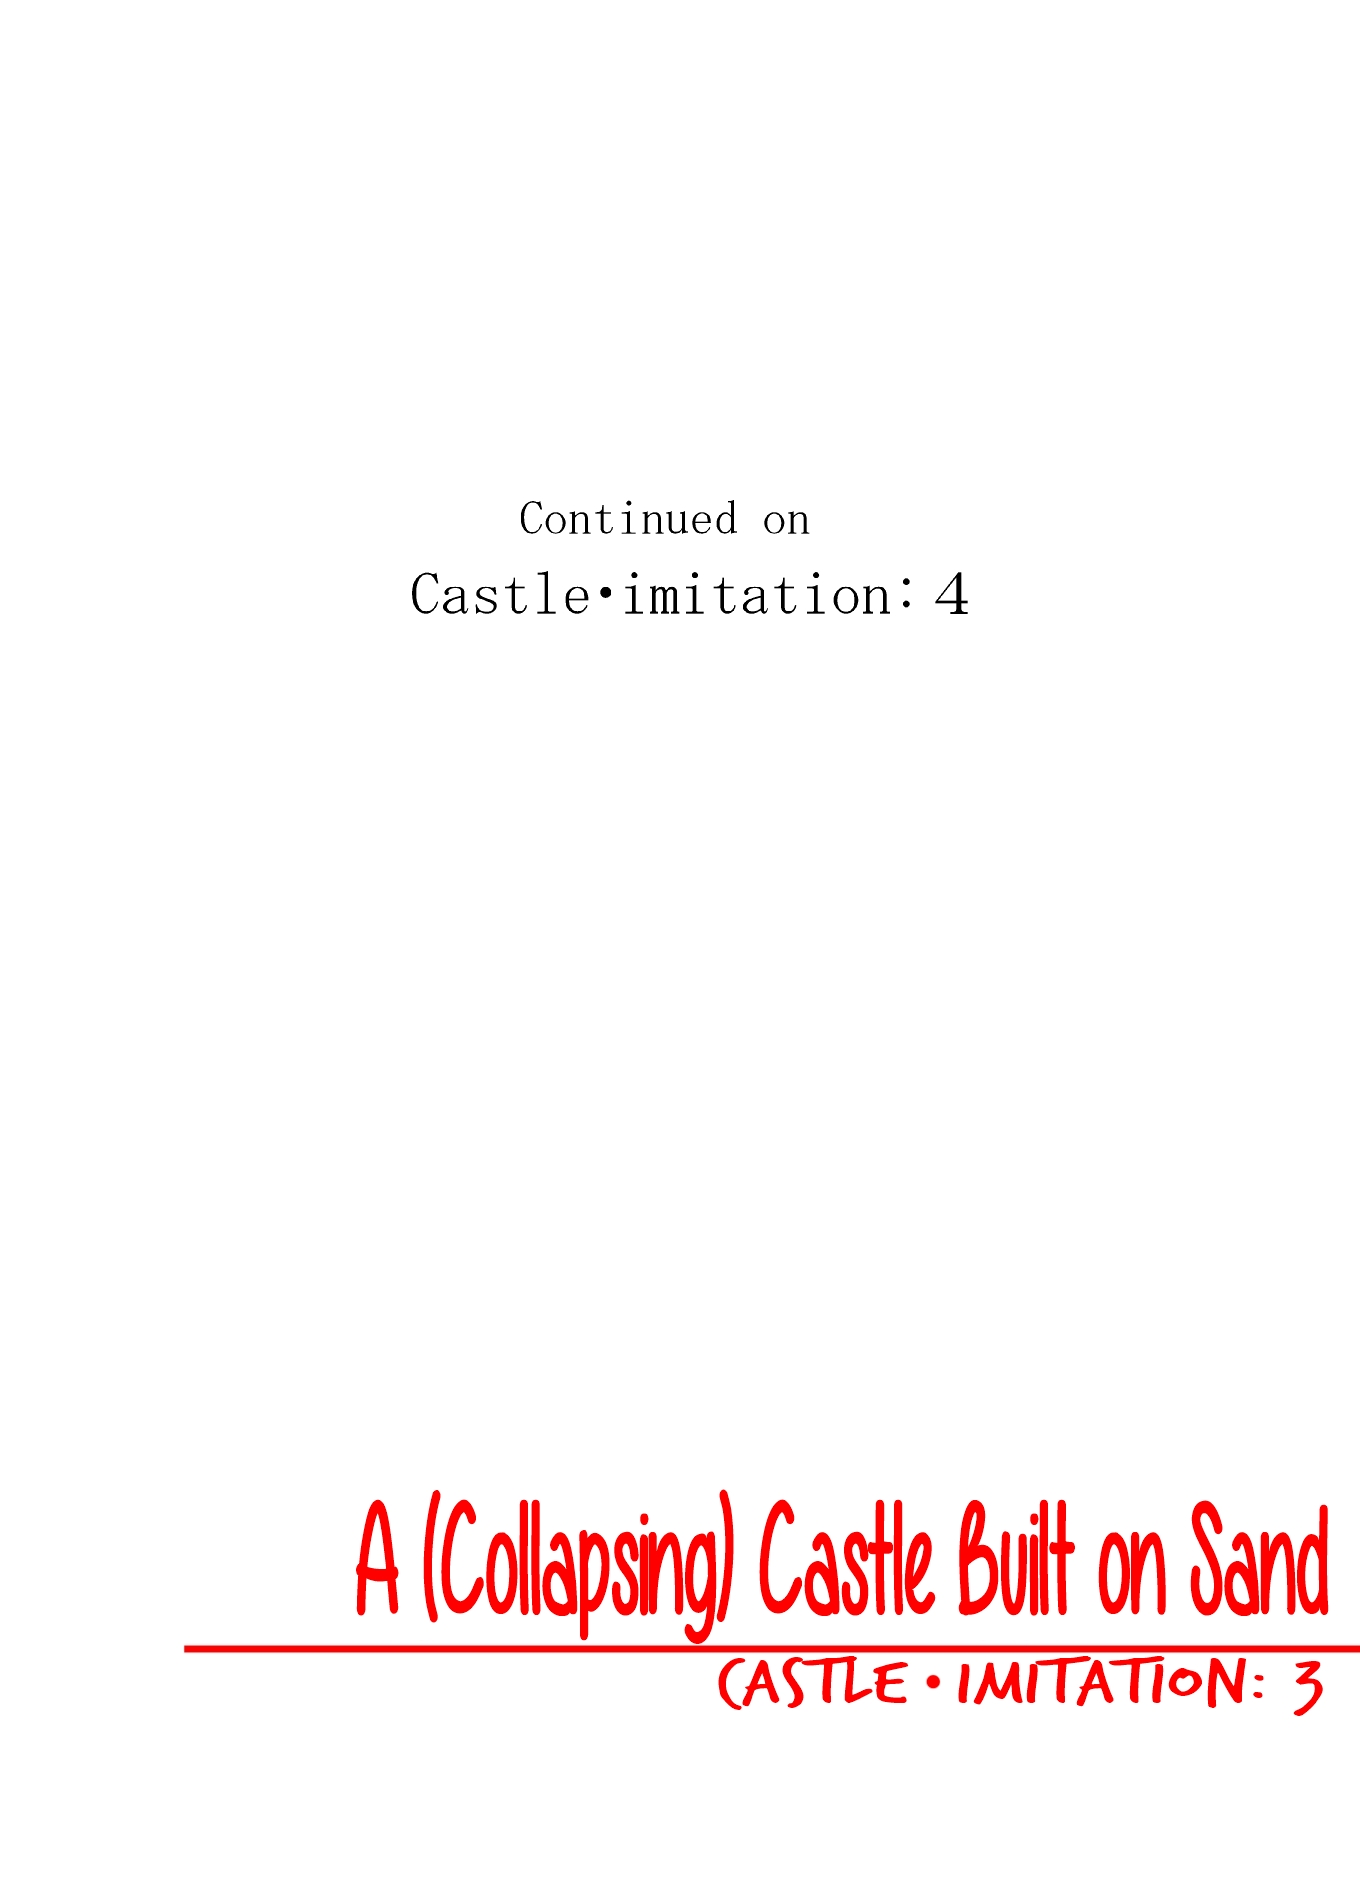 砂の上に建てられた城-城、模倣：3